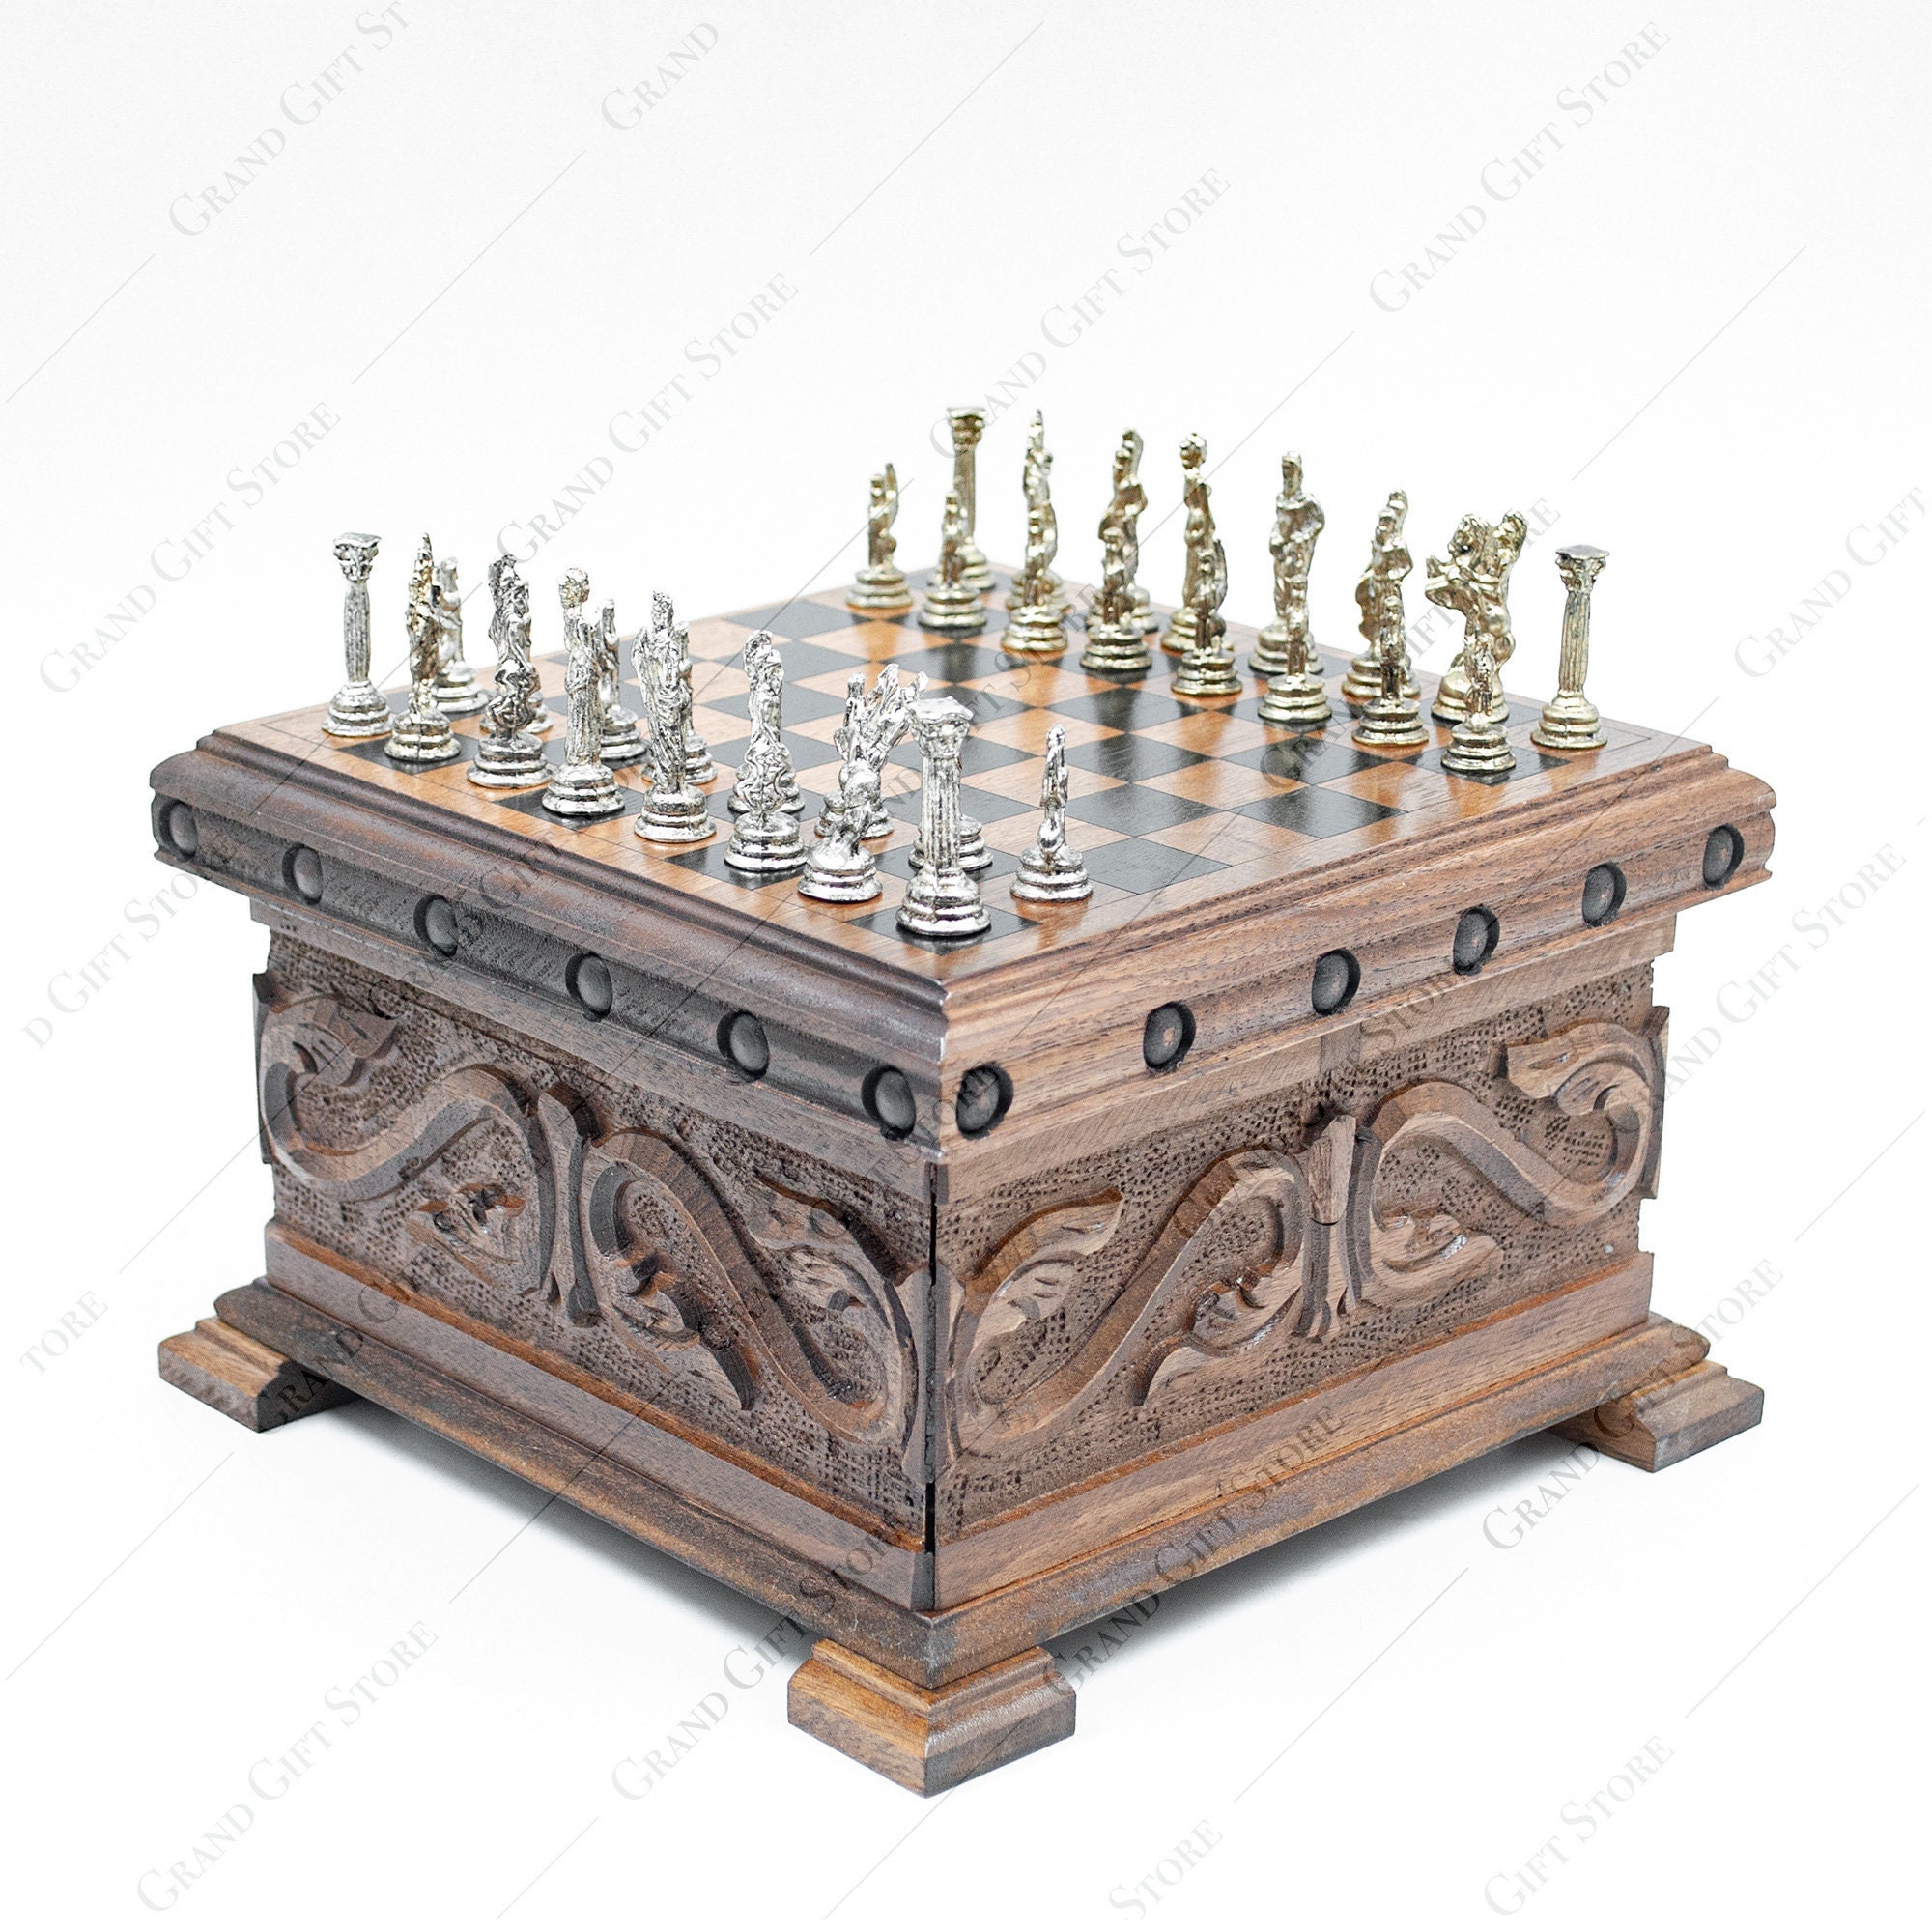 Einzigartiges Schachbrett mit Metall Schachfiguren